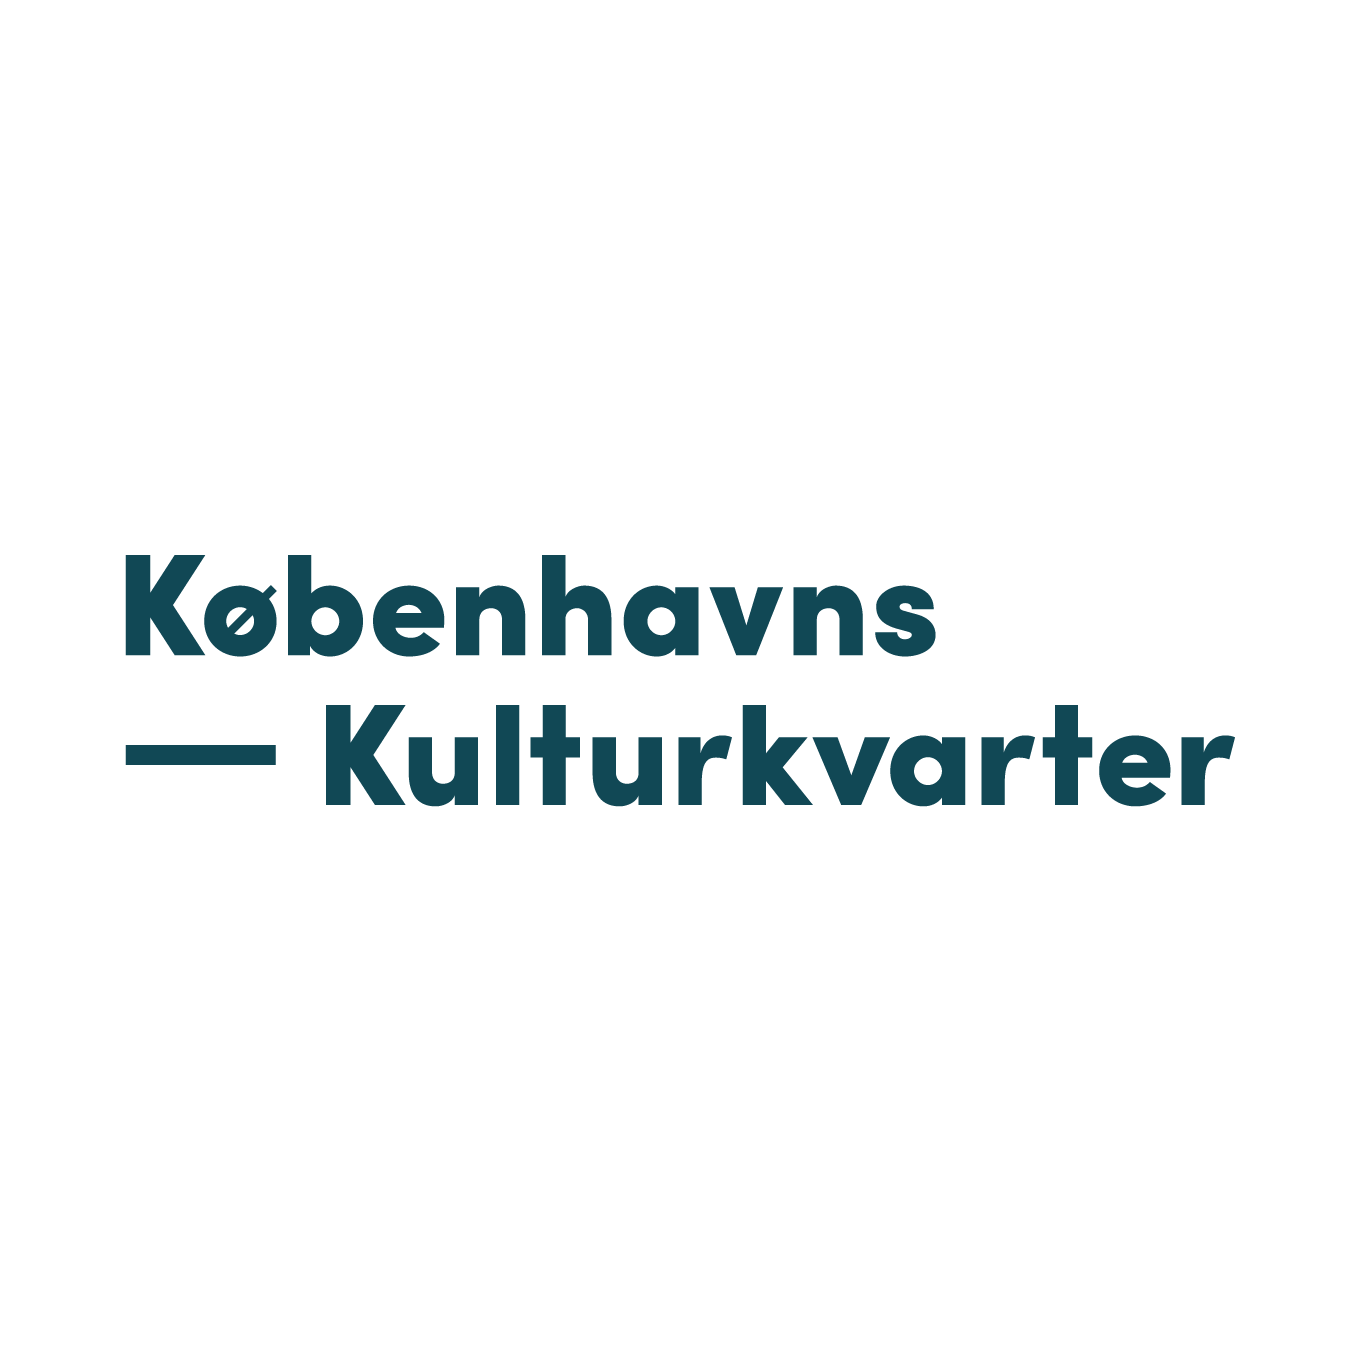 Københavns Kulturkvarter logo